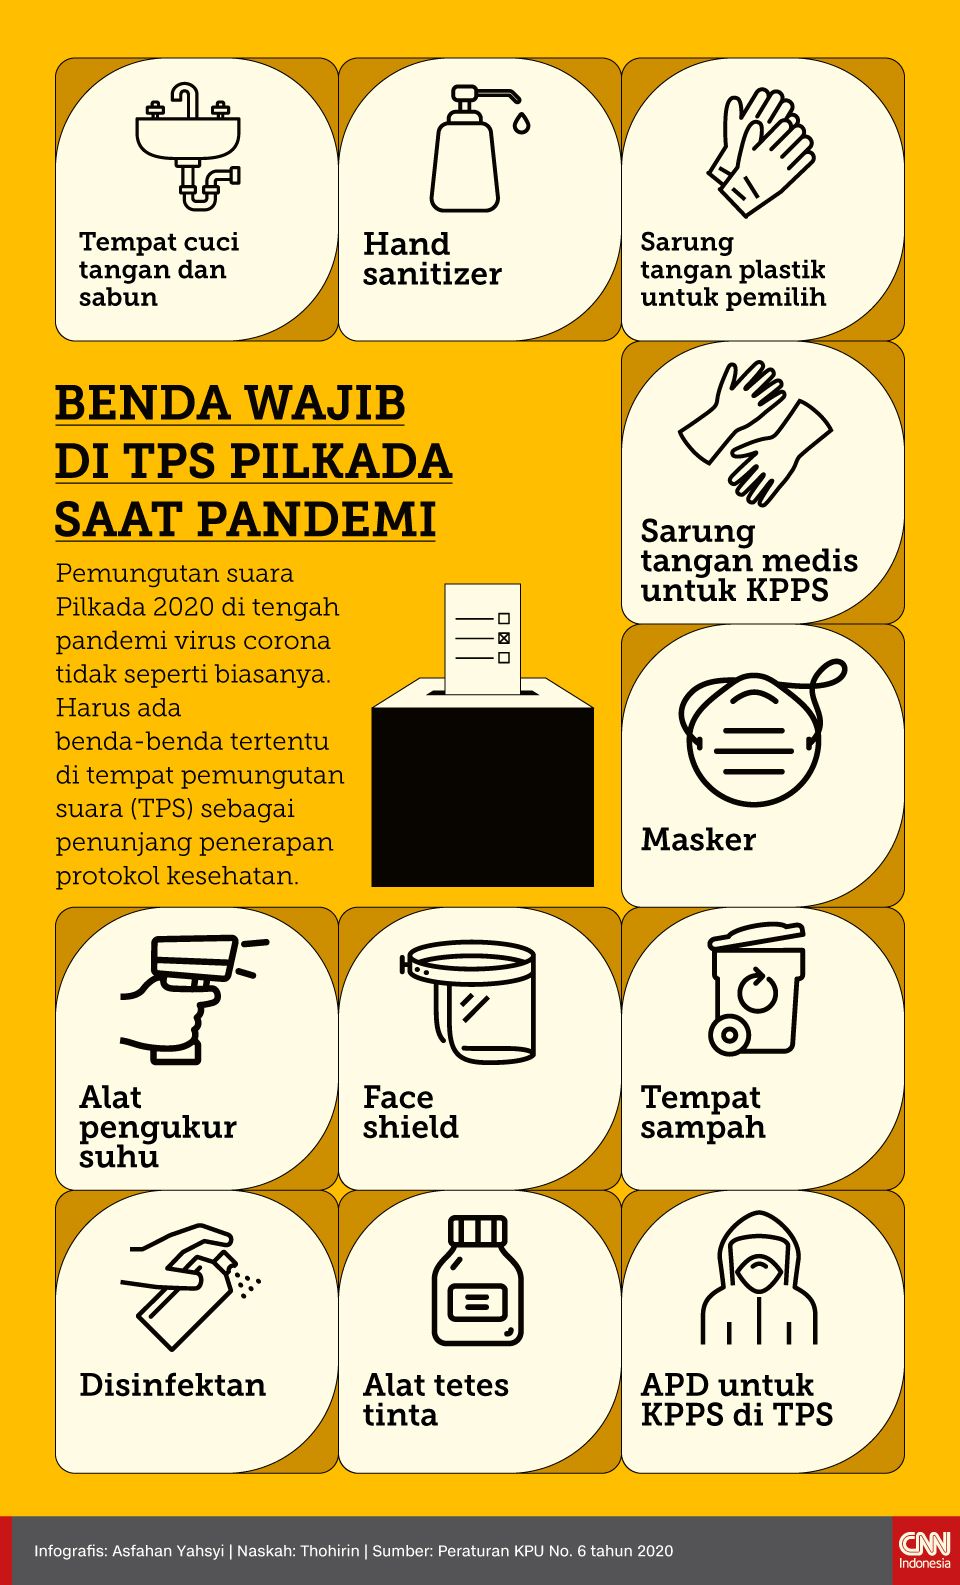 Infografis BENDA WAJIB DI TPS PILKADA SAAT PANDEMI